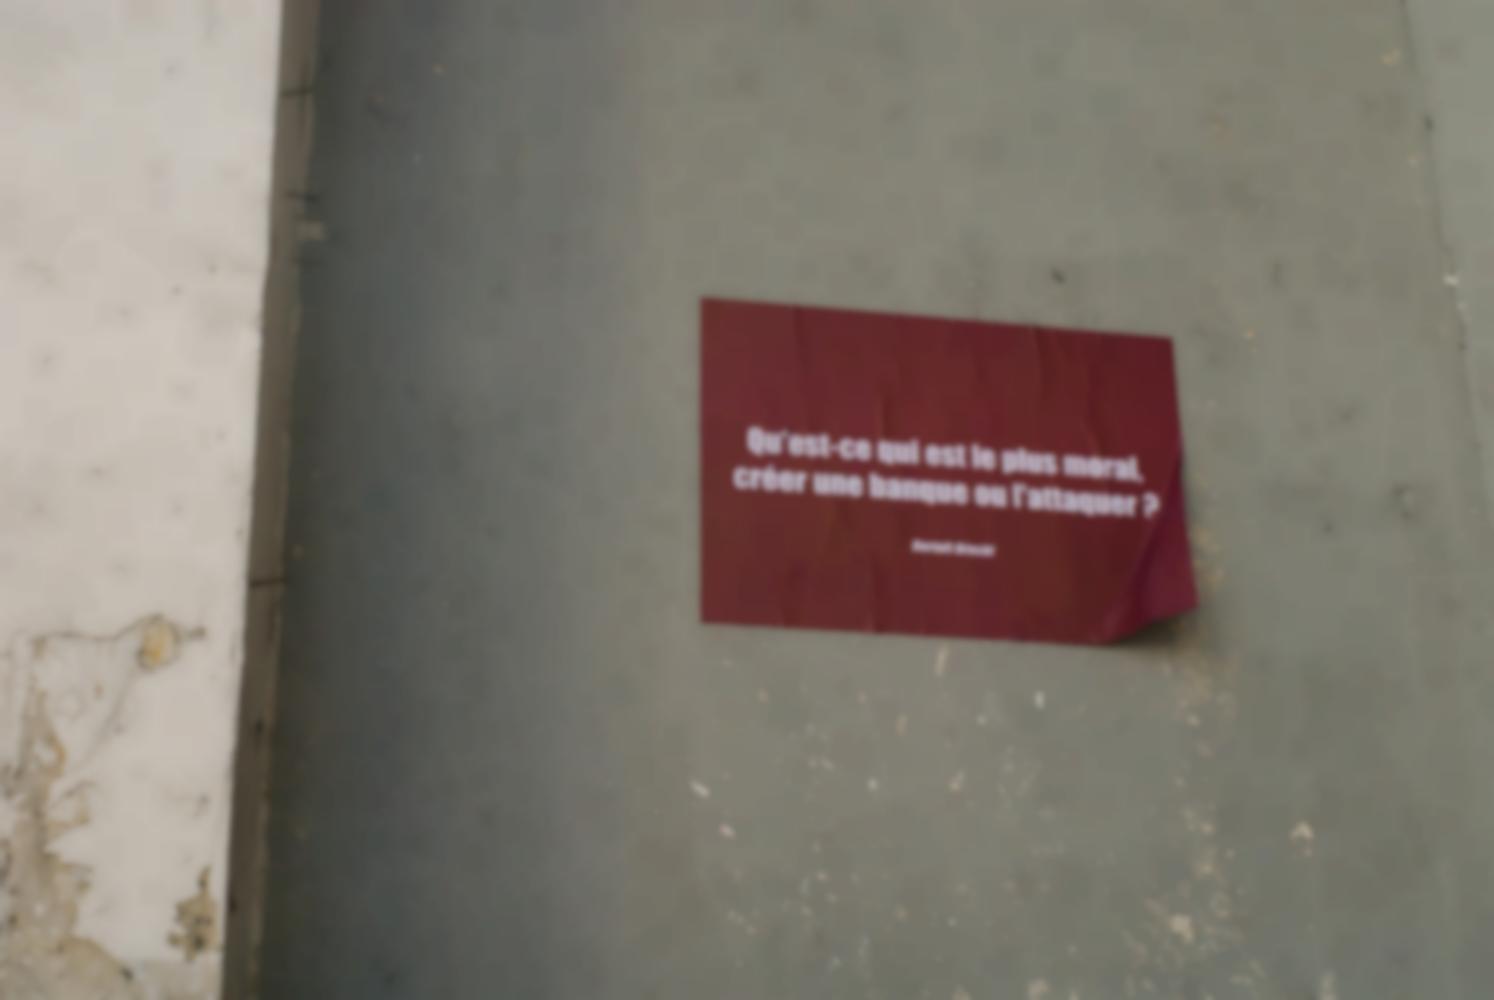 Une affiche rouge collée sur un mur pose une question de Bertolt Brecht. Paris, novembre 2009.